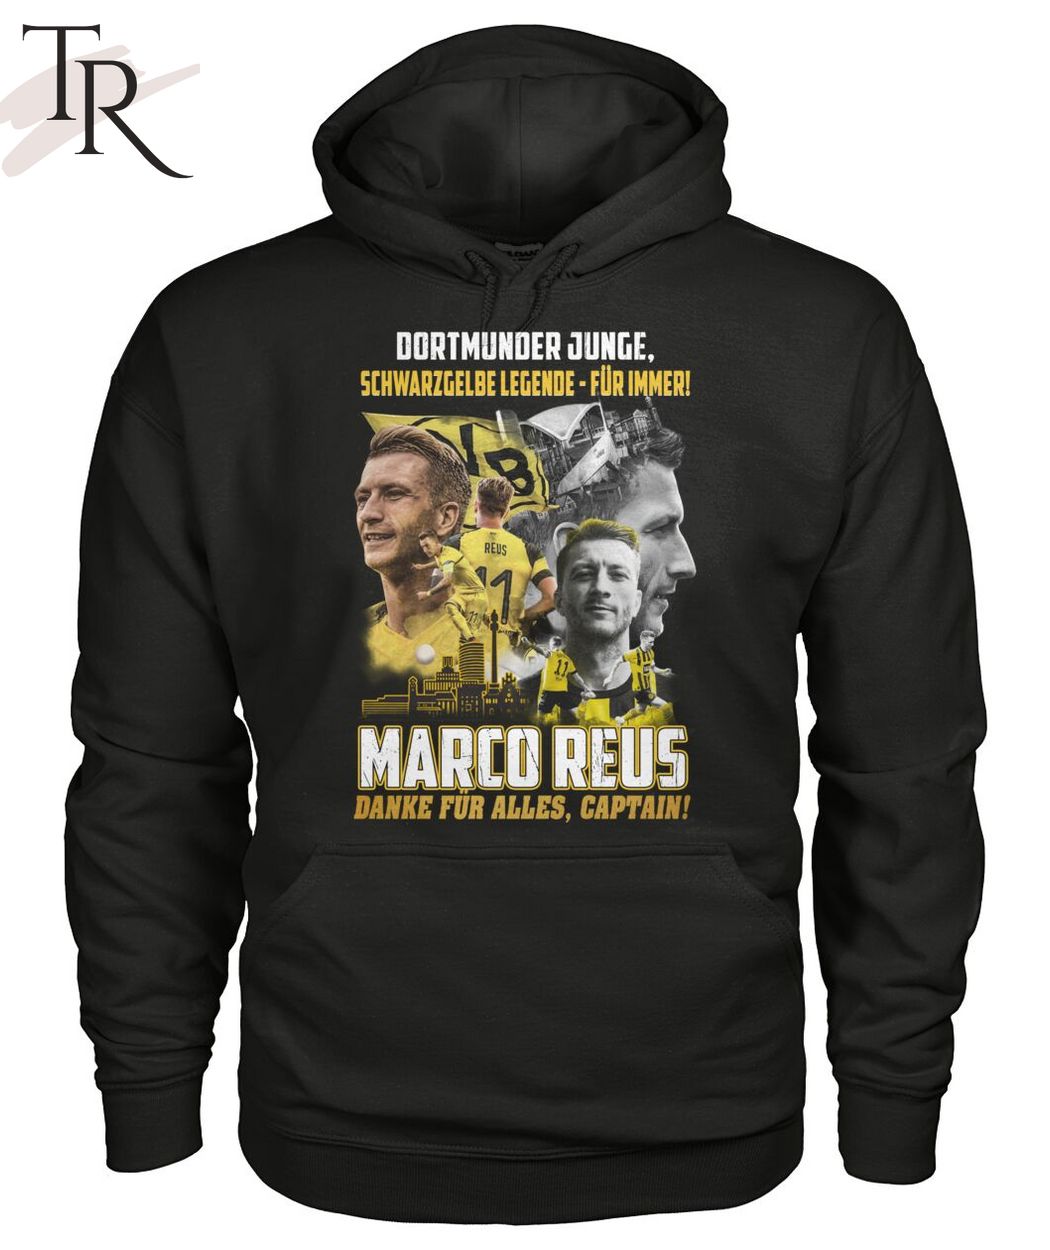 Dortmunder Junge Schwarz Gelbe Legende - Fur Immer Marco Reus Danke Fur Alles, Captain T-Shirt